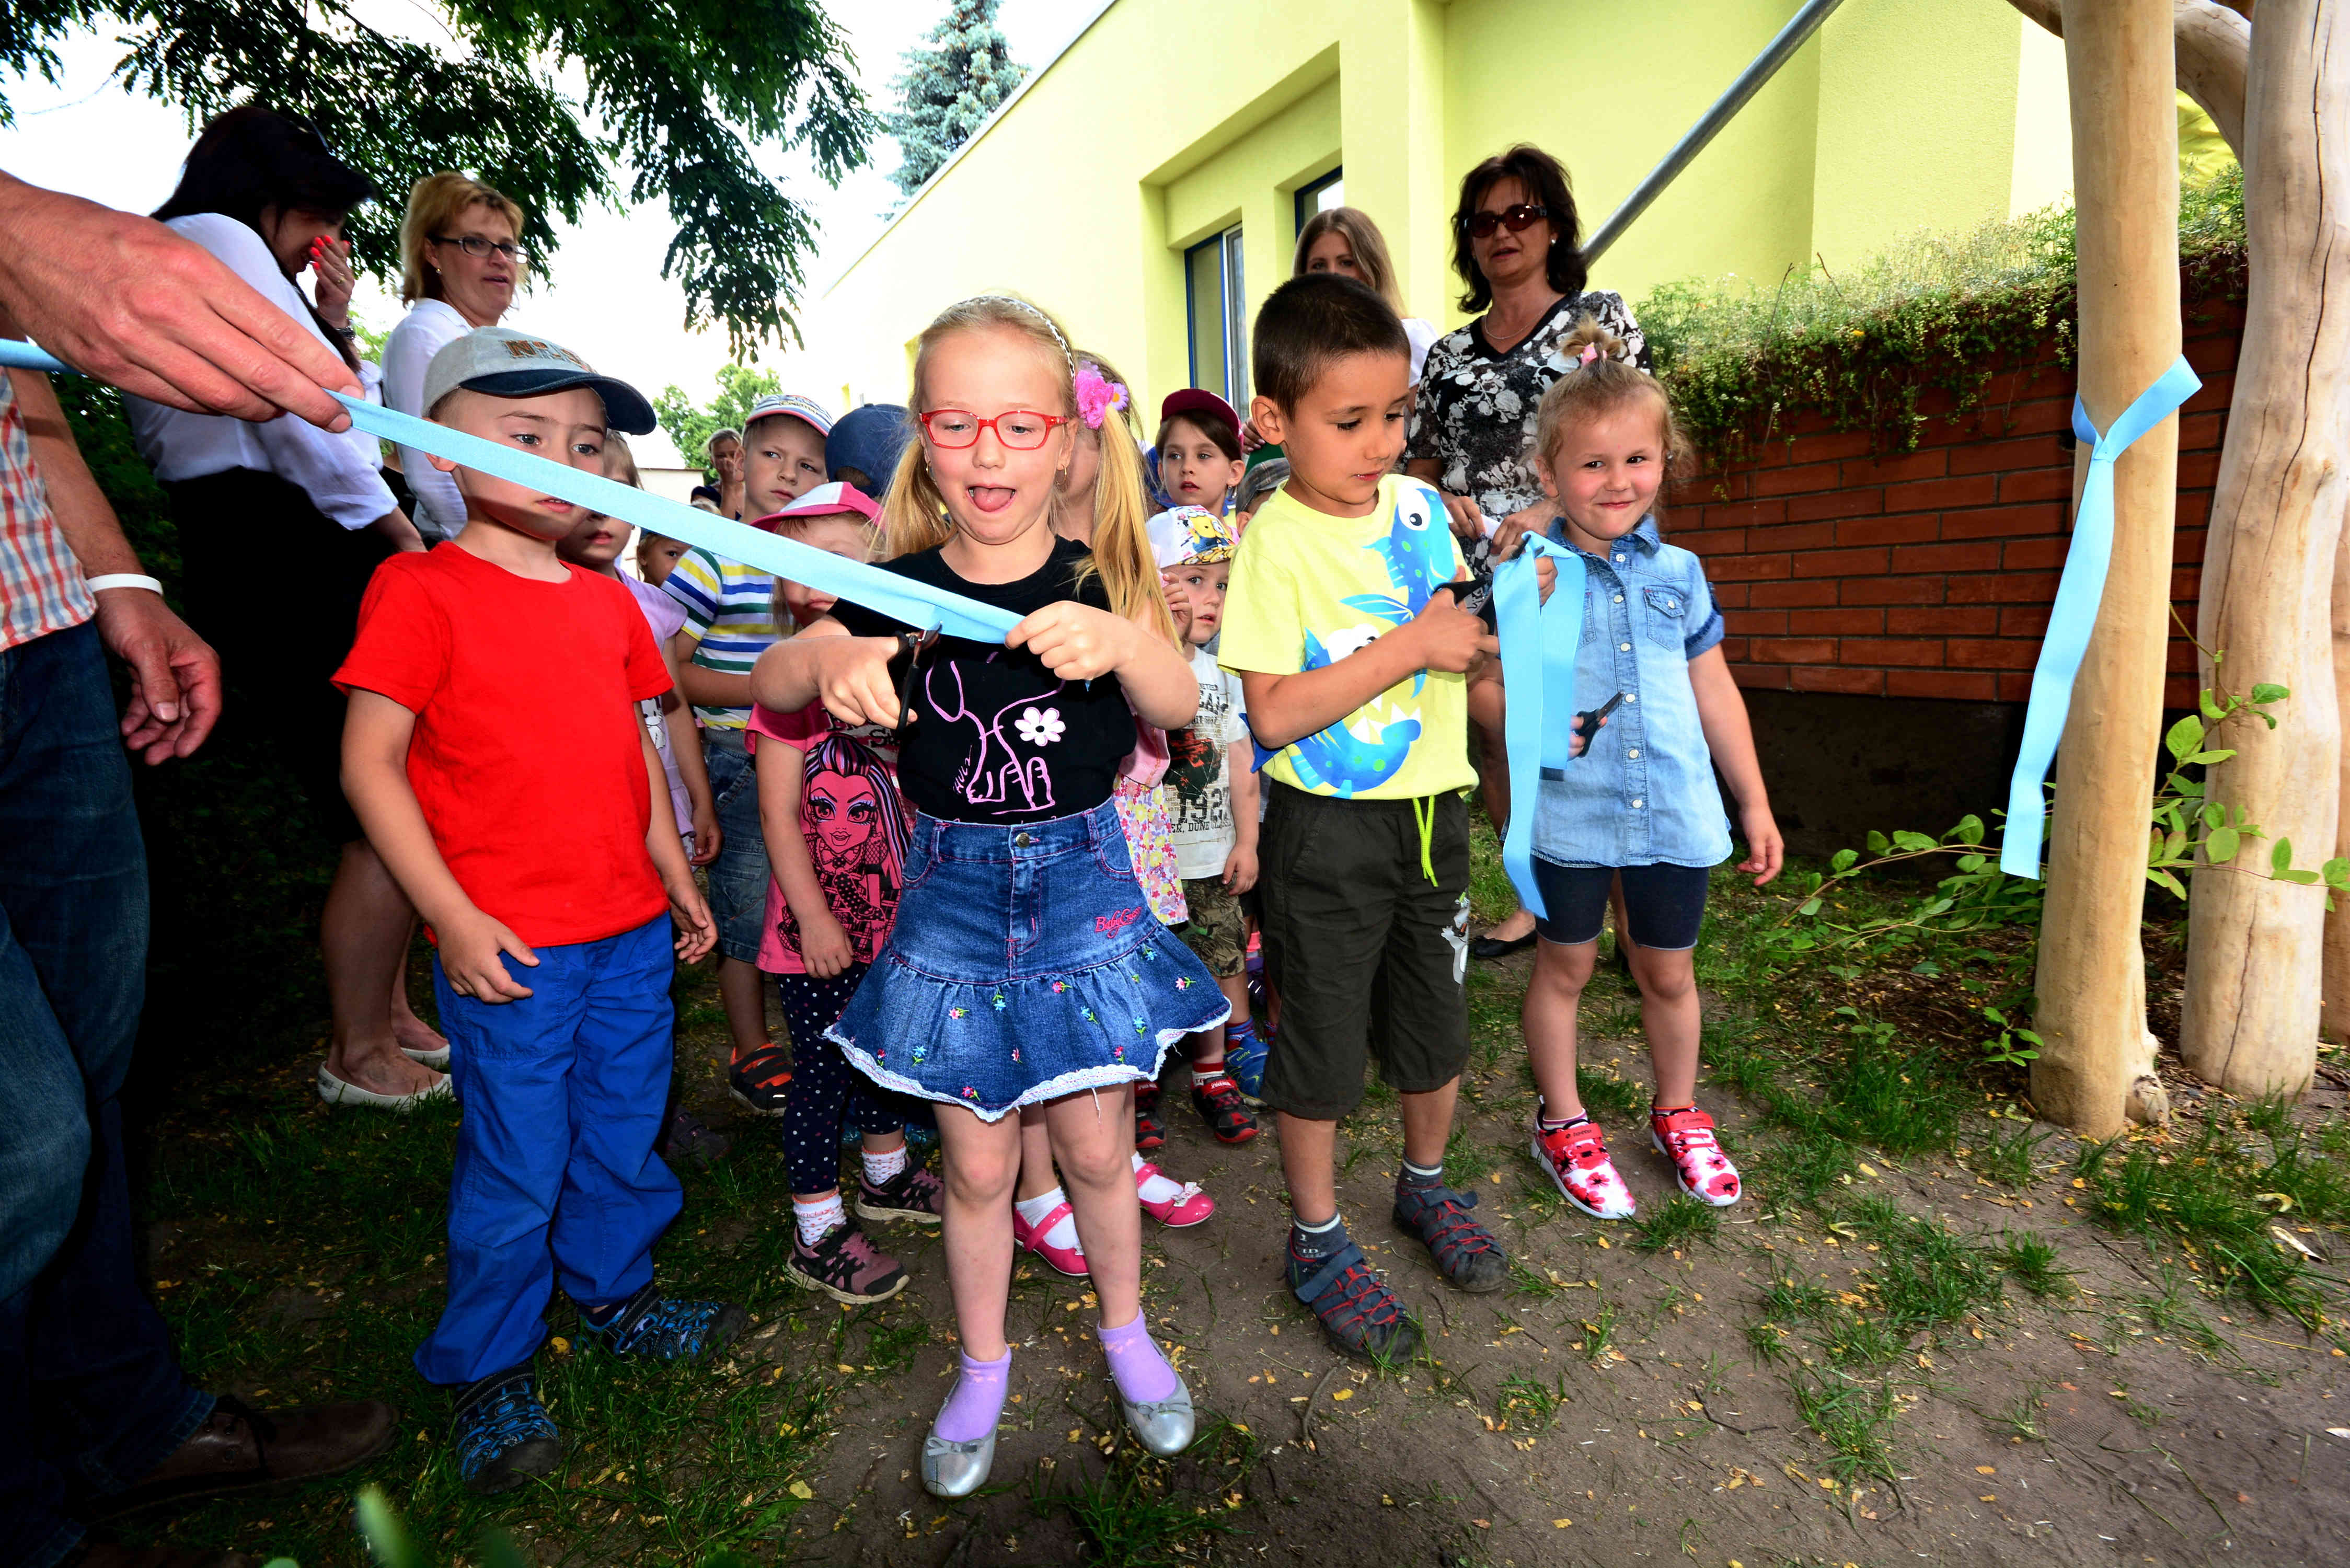 Mateřská škola uspořádala Den otevřených dveří